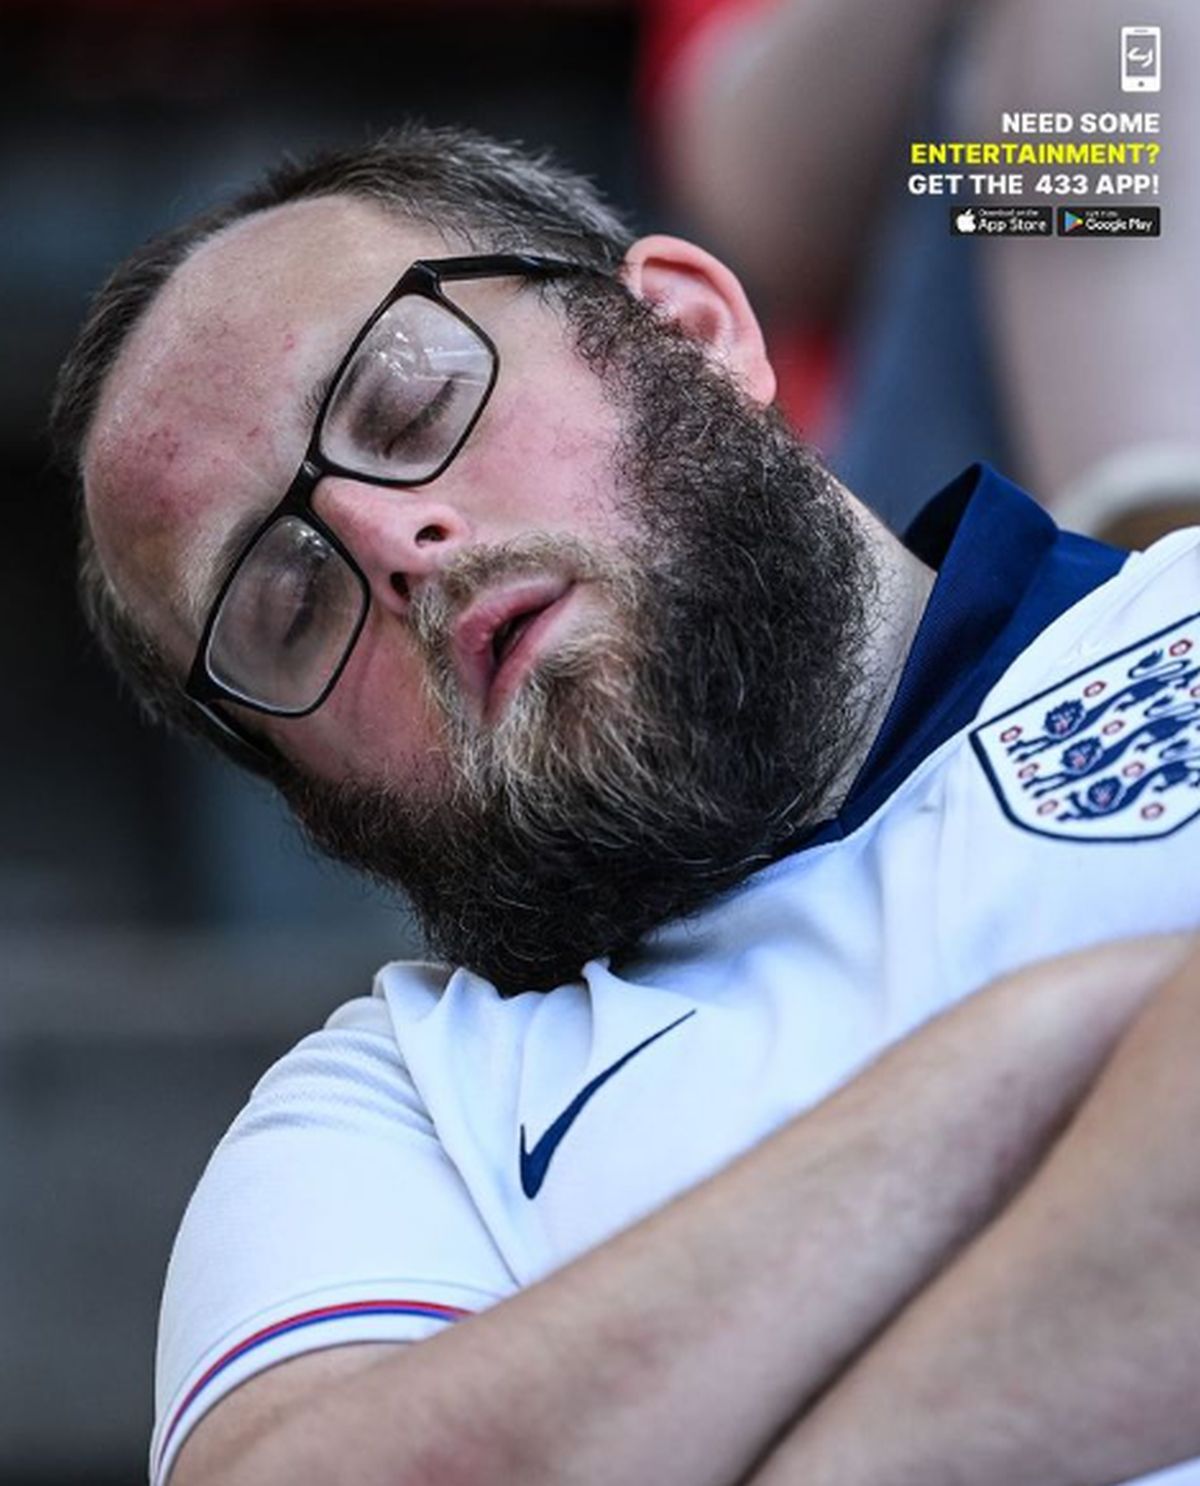 Suporterii Angliei, doborâți de plictiseală în meciul cu Slovenia! Imagini virale pe continent